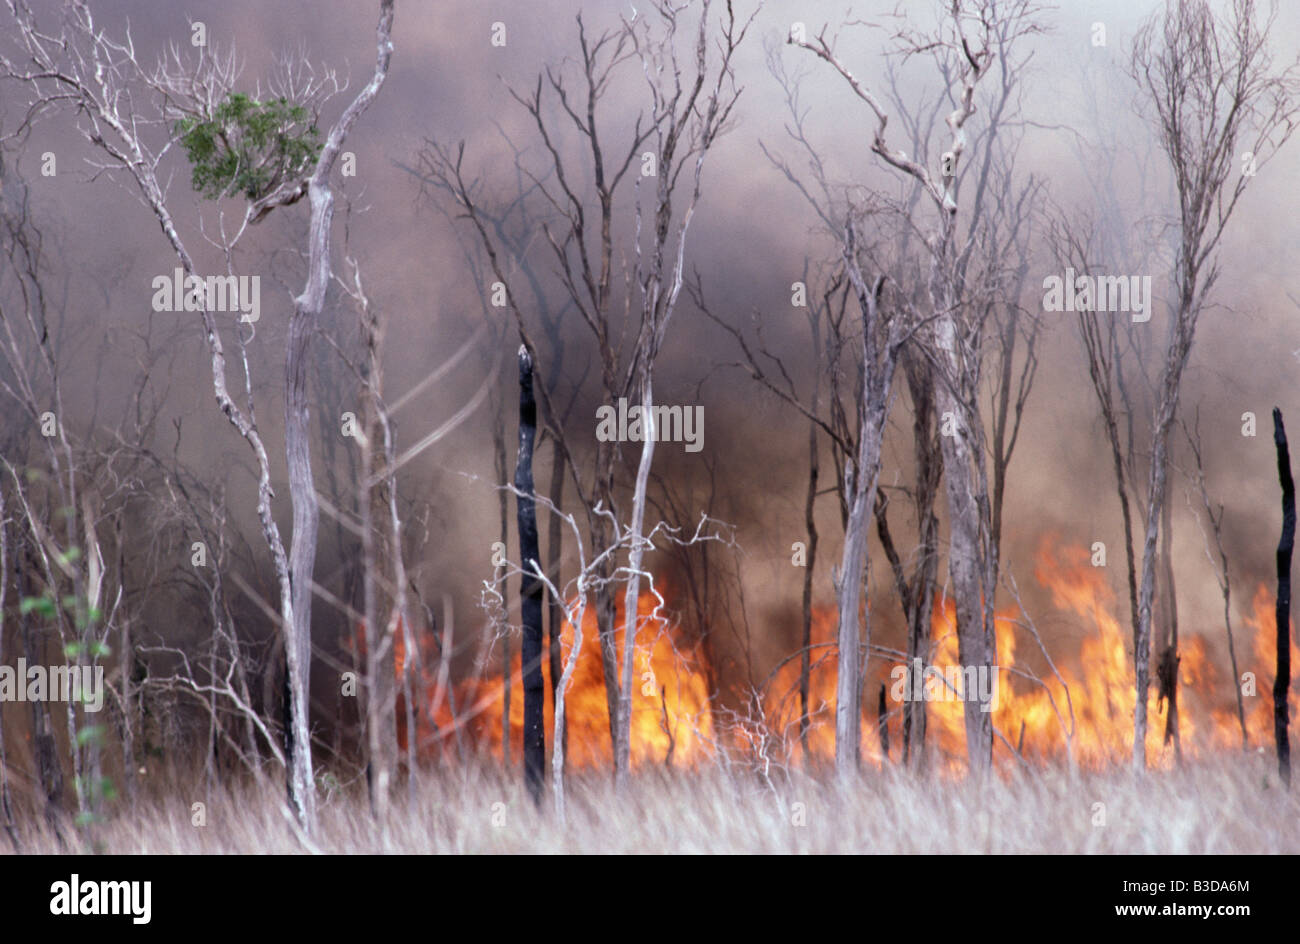 Feu de forets d'incendie de forêt en feu au sud de l'Afrique de l'Afrique MADAGASCAR sud ardent burn burning blaze brûlé brûlures embrasement de dama Banque D'Images